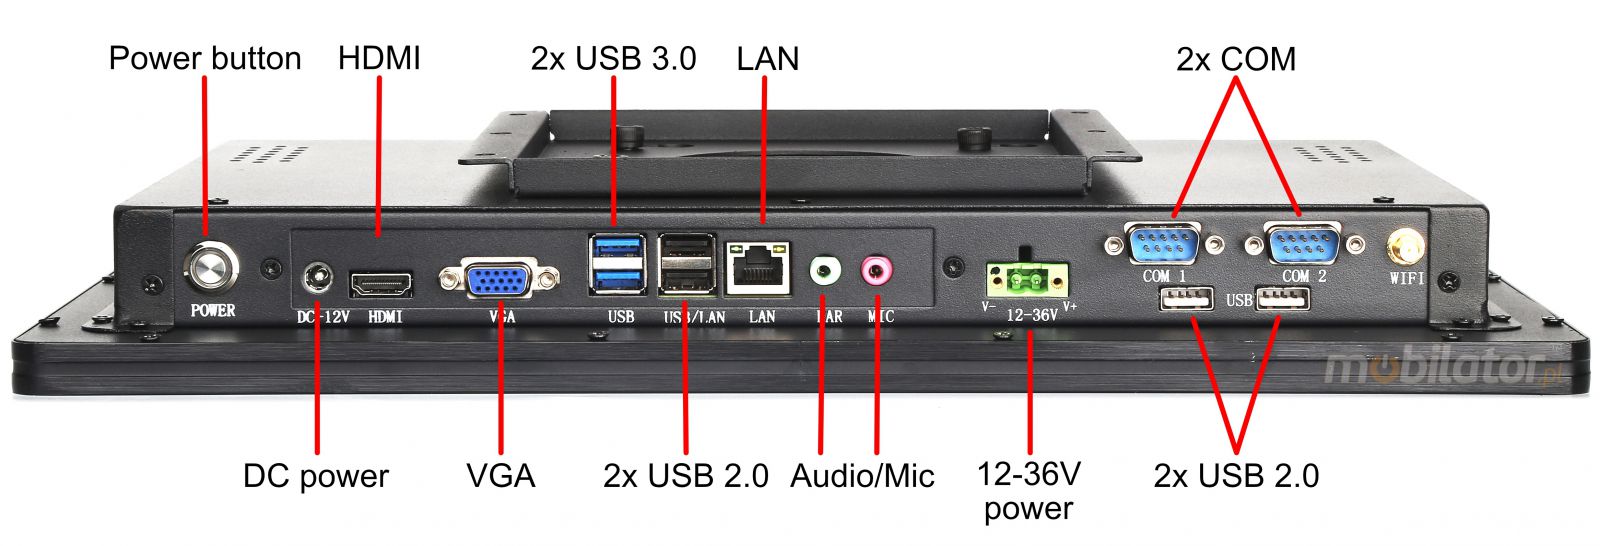 BiBOX-185PC1 (i5-4200U) v.5 - Wzmocniony panel komputerowy z IP65 (odporno woda i py) z dyskiem SSD 256 GB, technologi 4G oraz WiFi